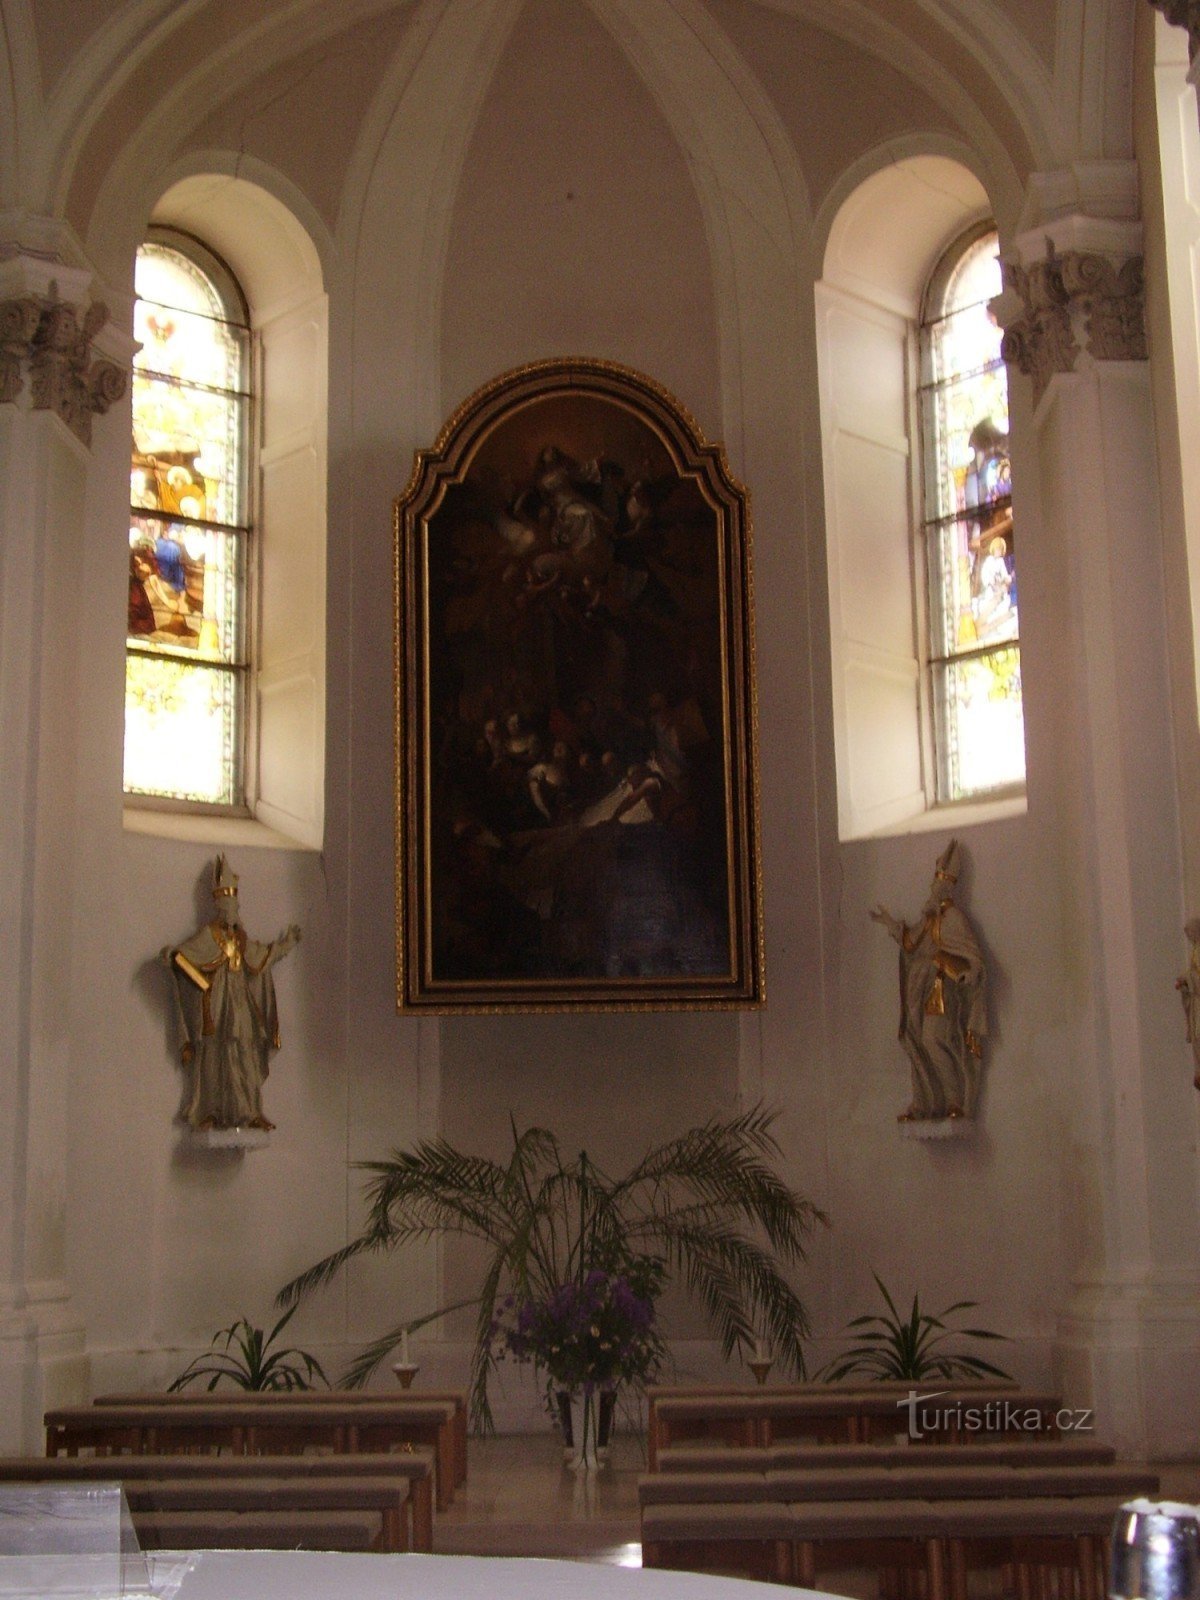 Zwiedzanie kościoła Wniebowzięcia Najświętszej Marii Panny w Ivančicach - wnętrze